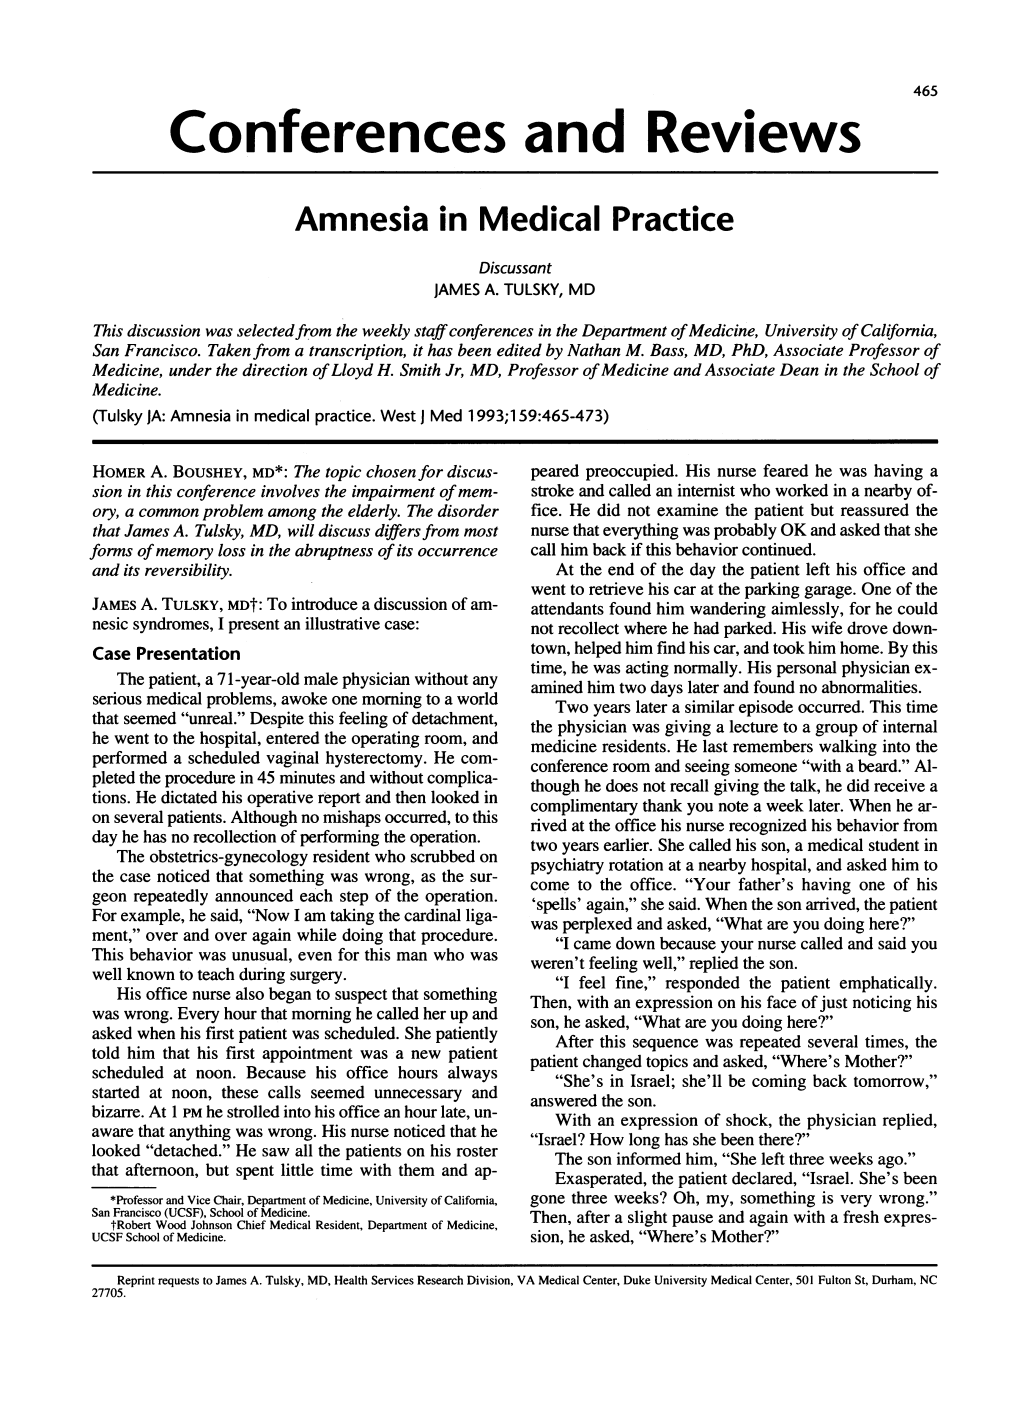 Amnesia in Medical Practice